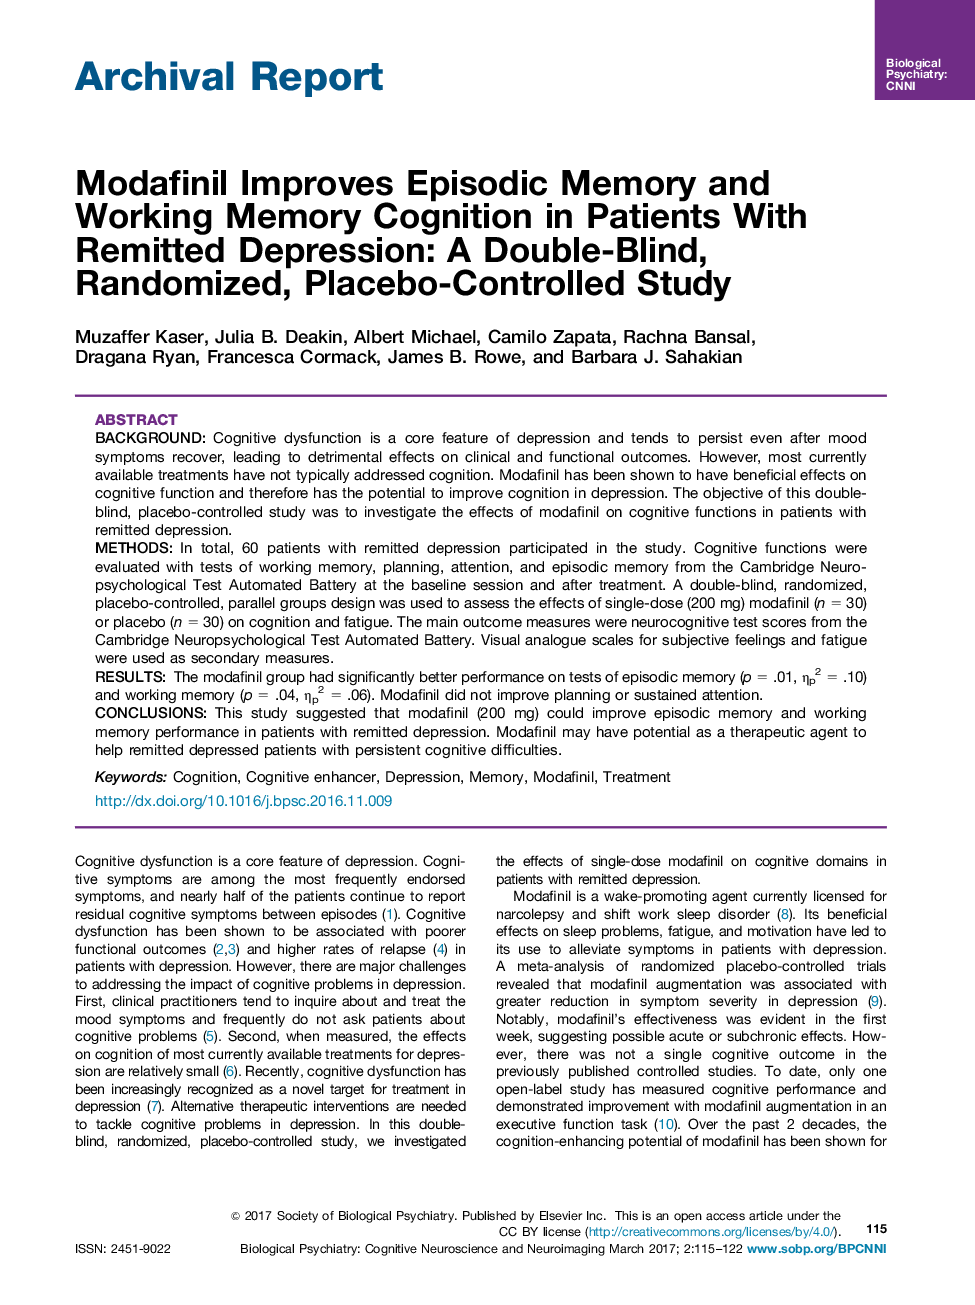 گزارش بایگانی مودافینیل بهبود حافظه اپیزودیک و شناخت کارکرد حافظه در بیماران مبتلا به افسردگی تحت درمان: یک مطالعه دوسویه، تصادفی شده، کنترل شده با پلاسبو 